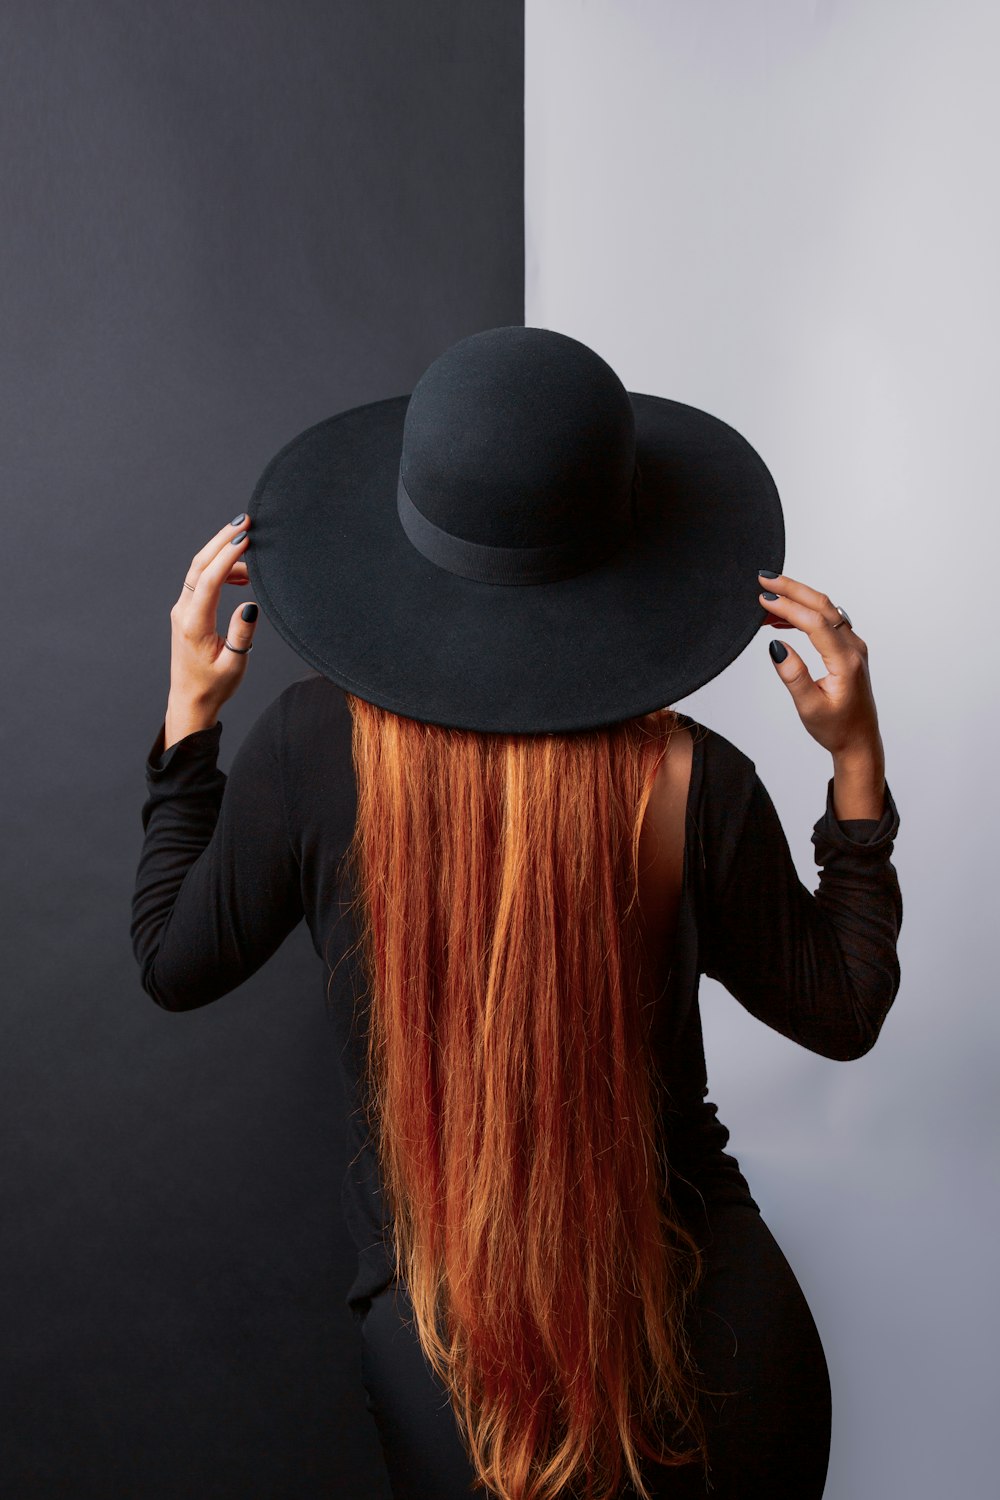 黒い帽子をかぶった長い赤い髪の女性